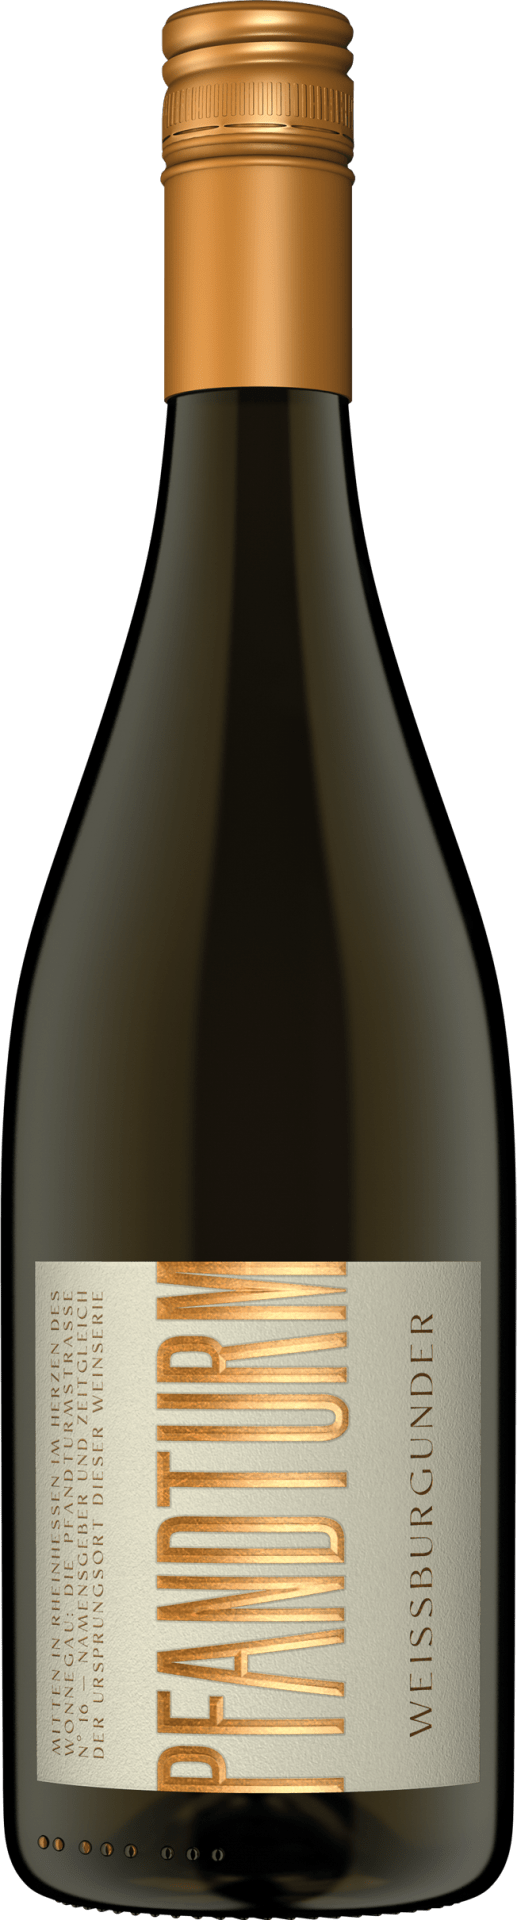 Weissburgunder Qualitätswein trocken "Pfandturm"